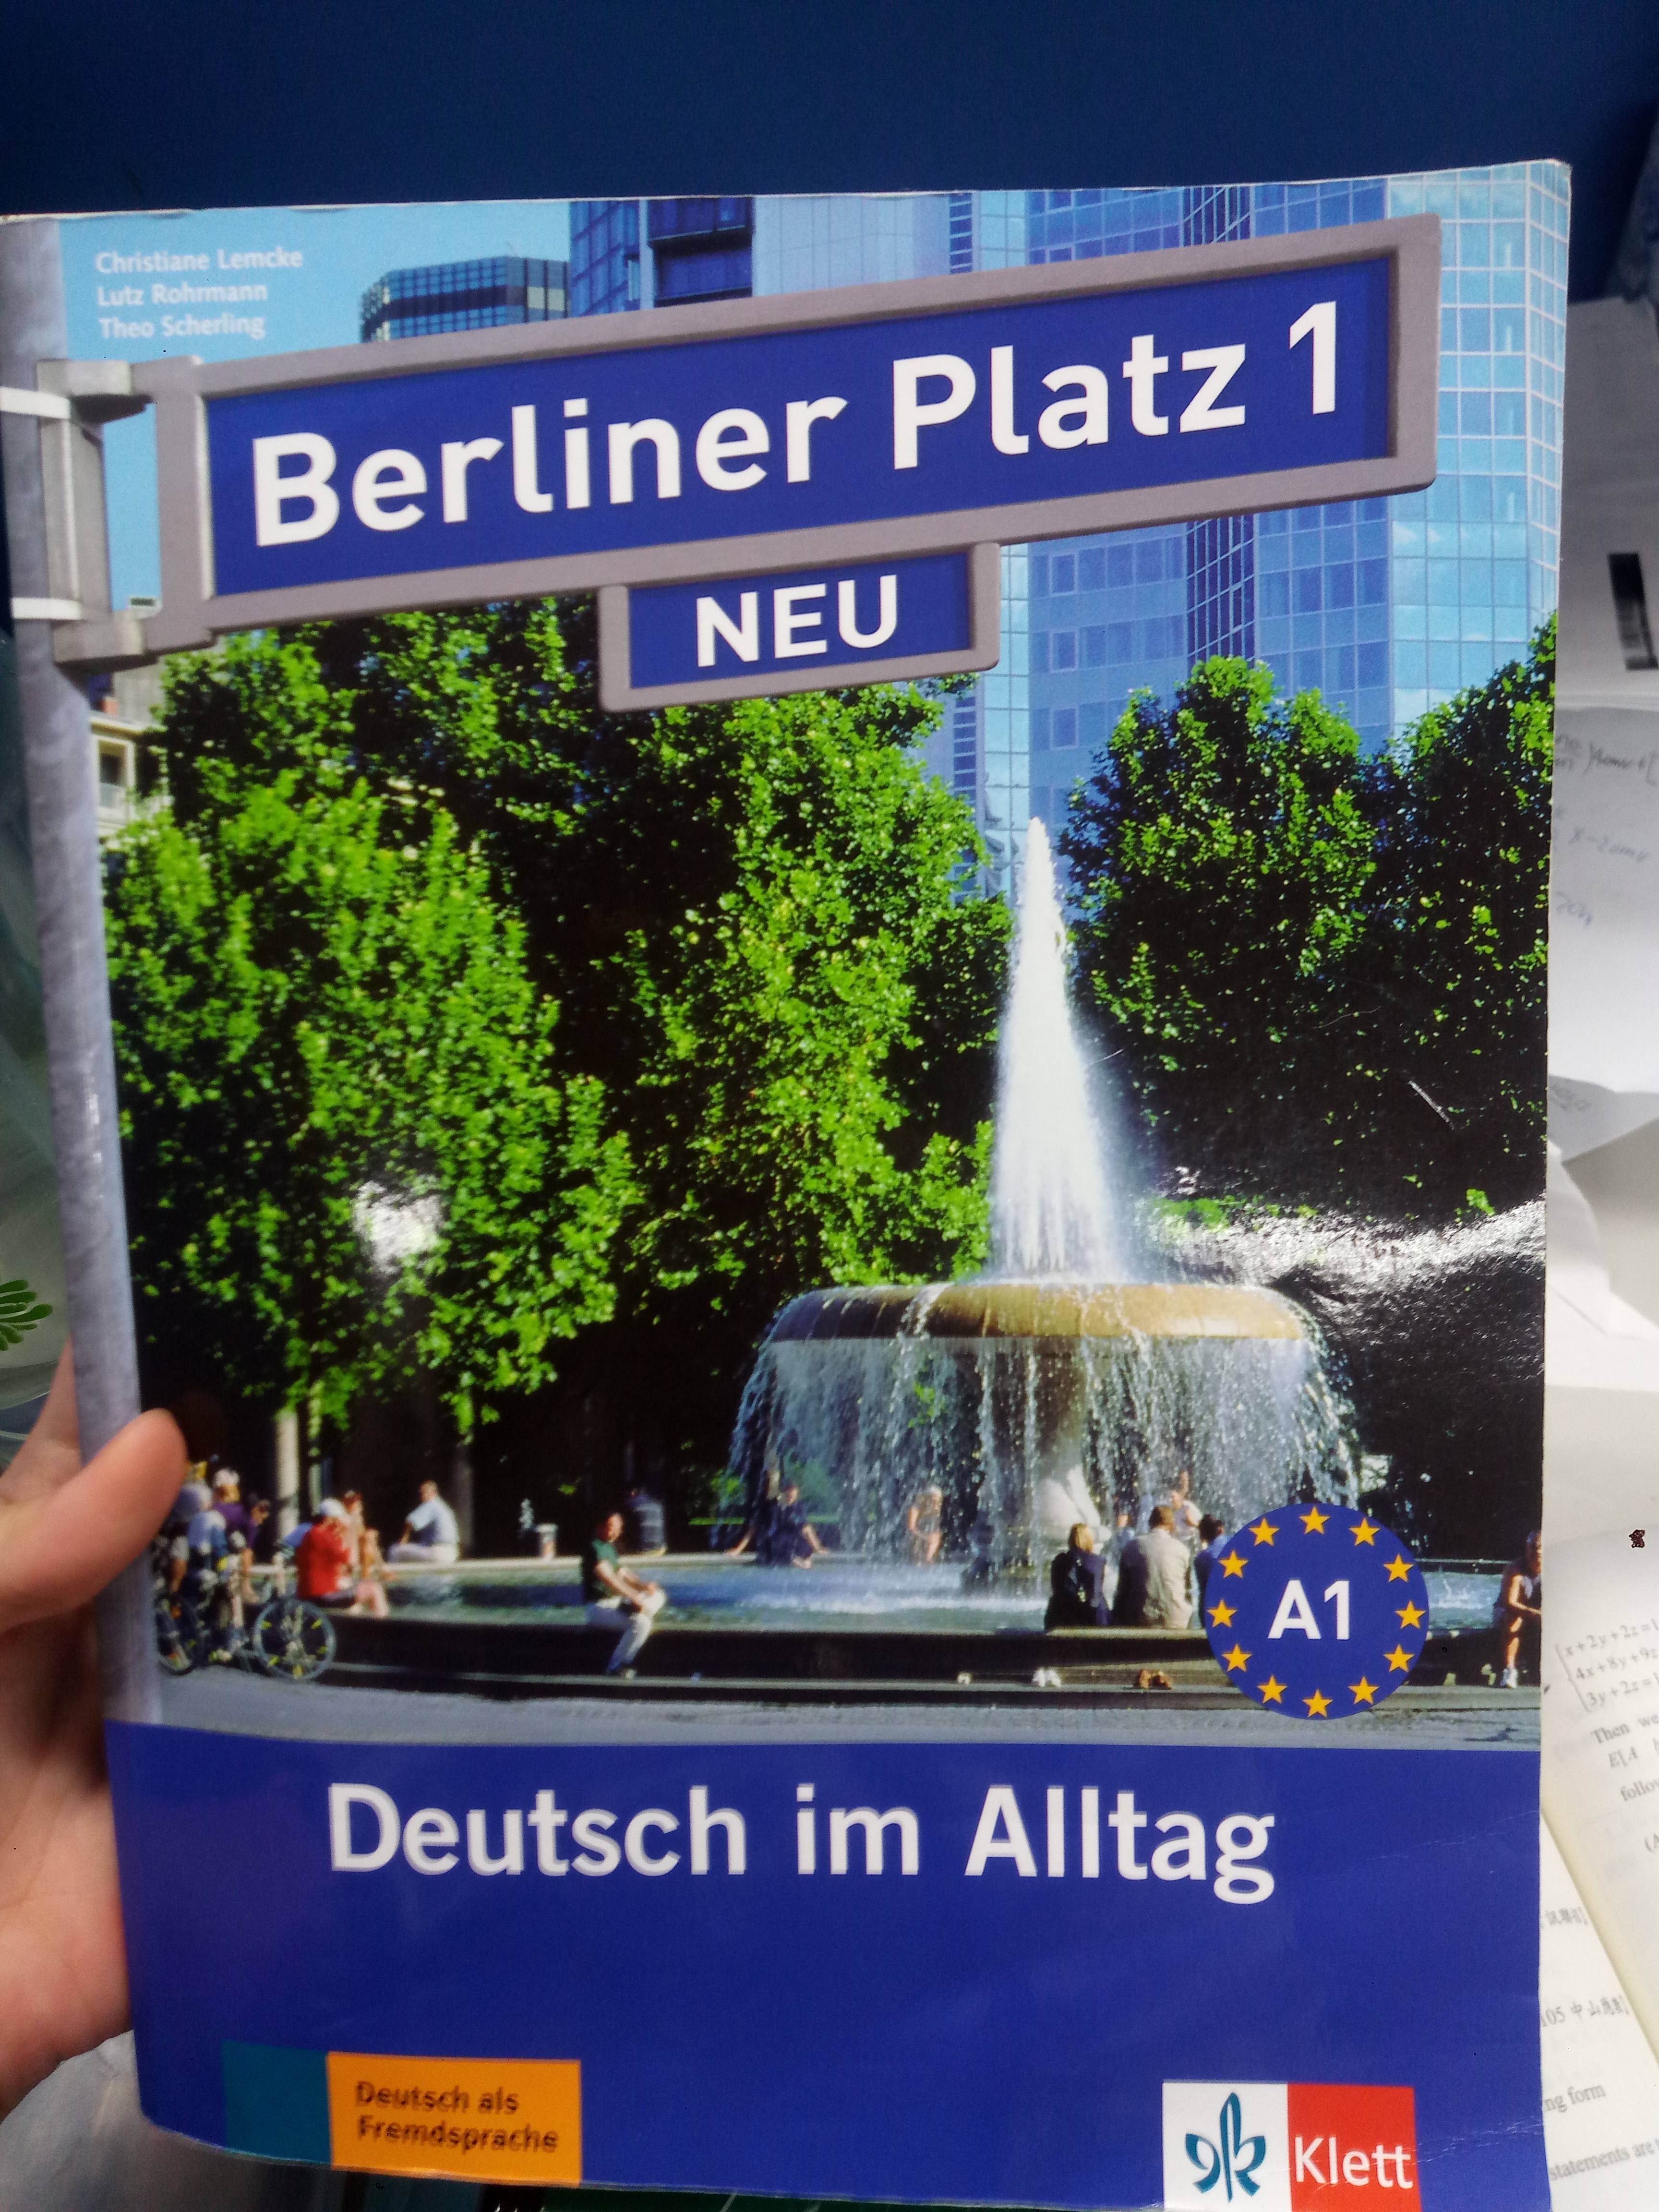 Berliner platz1 詳細資料